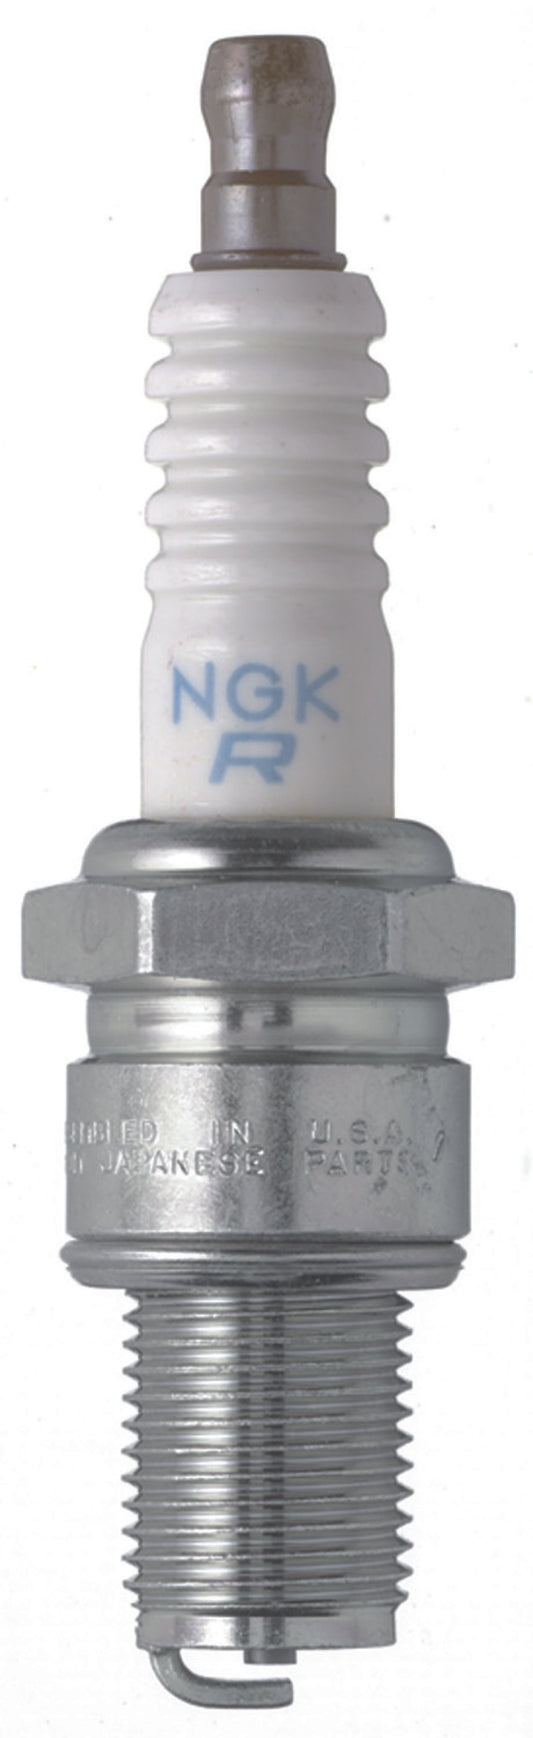 NGK Standard Spark Plug Box of 4 (BR9ES SOLID)